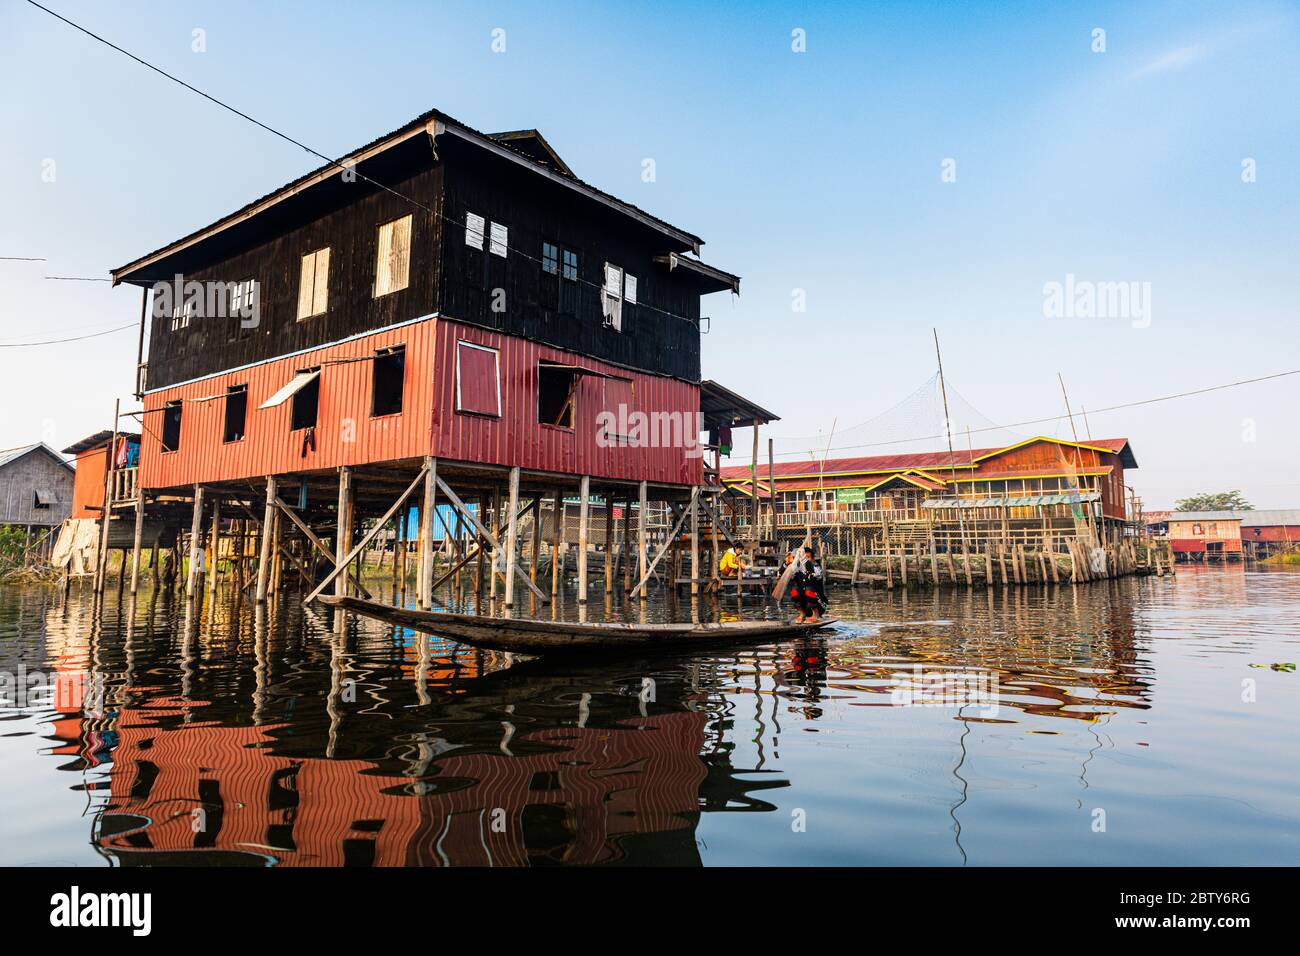 Village on stilts, Nampan, Inle Lake, Shan state, Myanmar (Burma), Asia Stock Photo